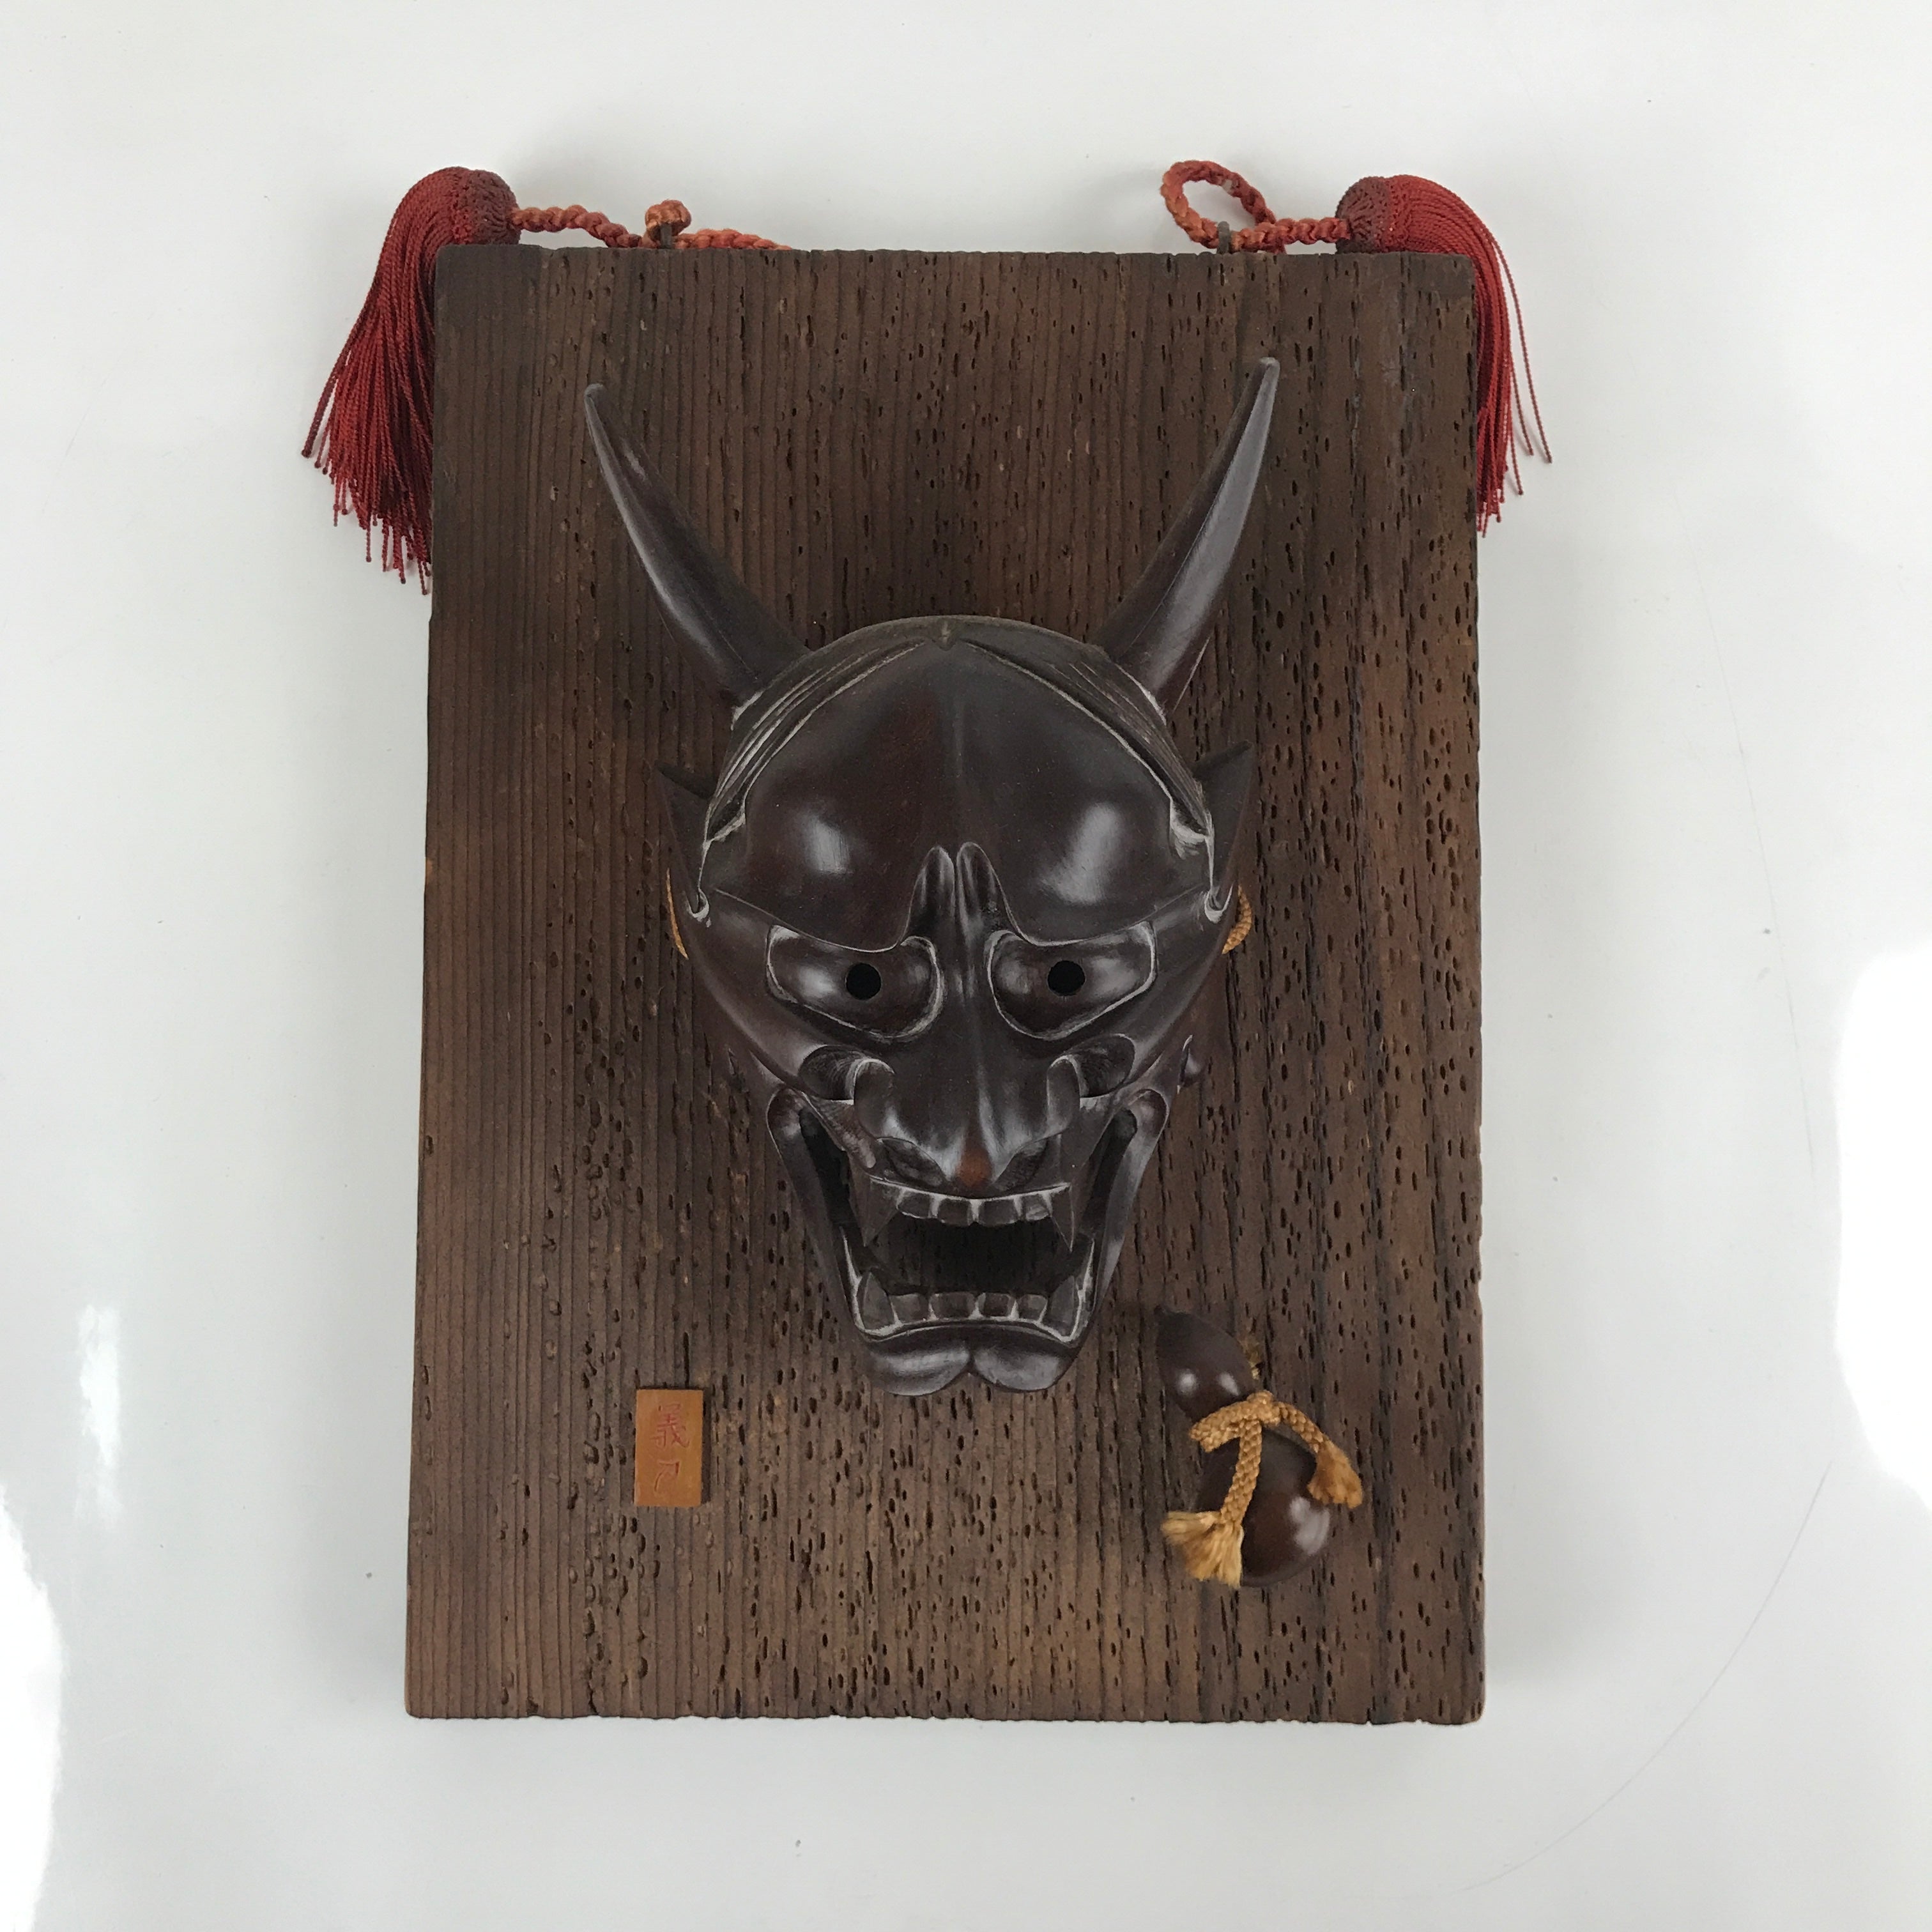 Japanese Carved Wooden Noh Mask Hannya Vtg Jealous Demon Wall Hanging OM45